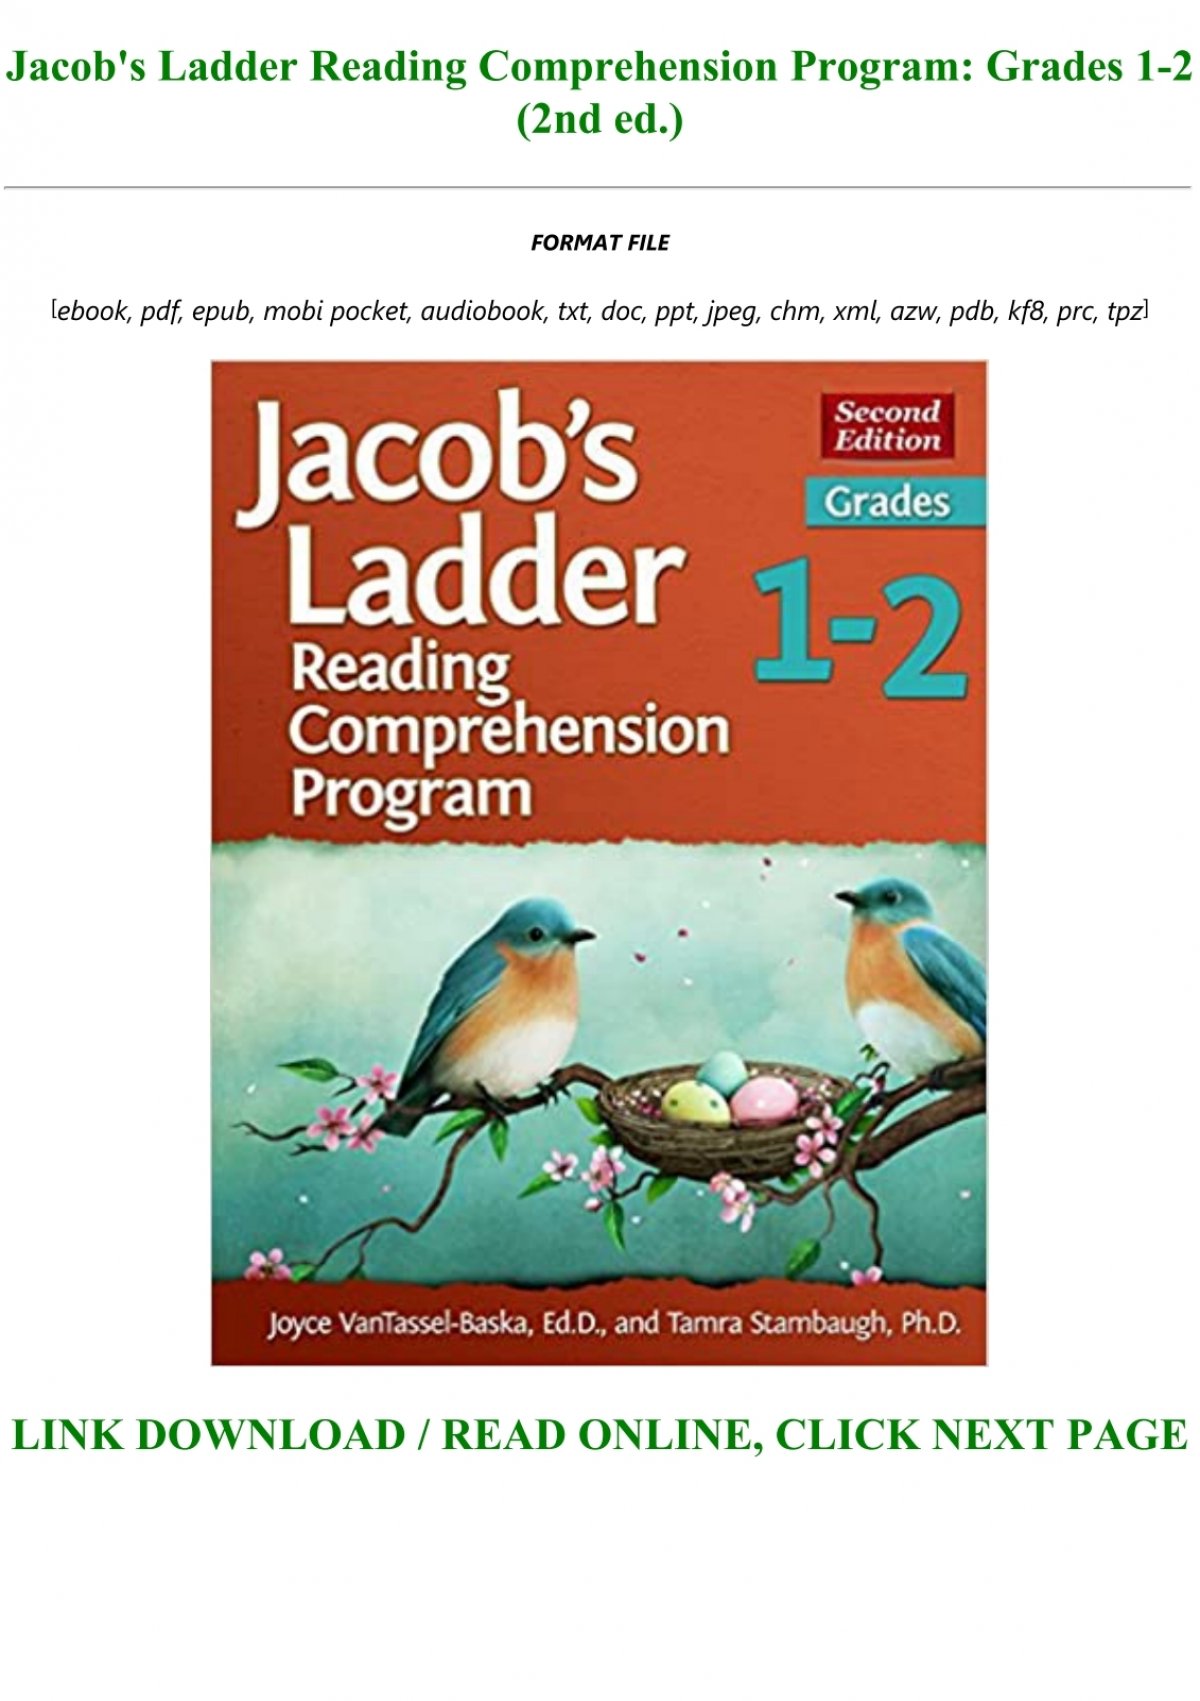 jacob-s-ladder-reading-comprehension-program-grades-1-2-2nd-ed